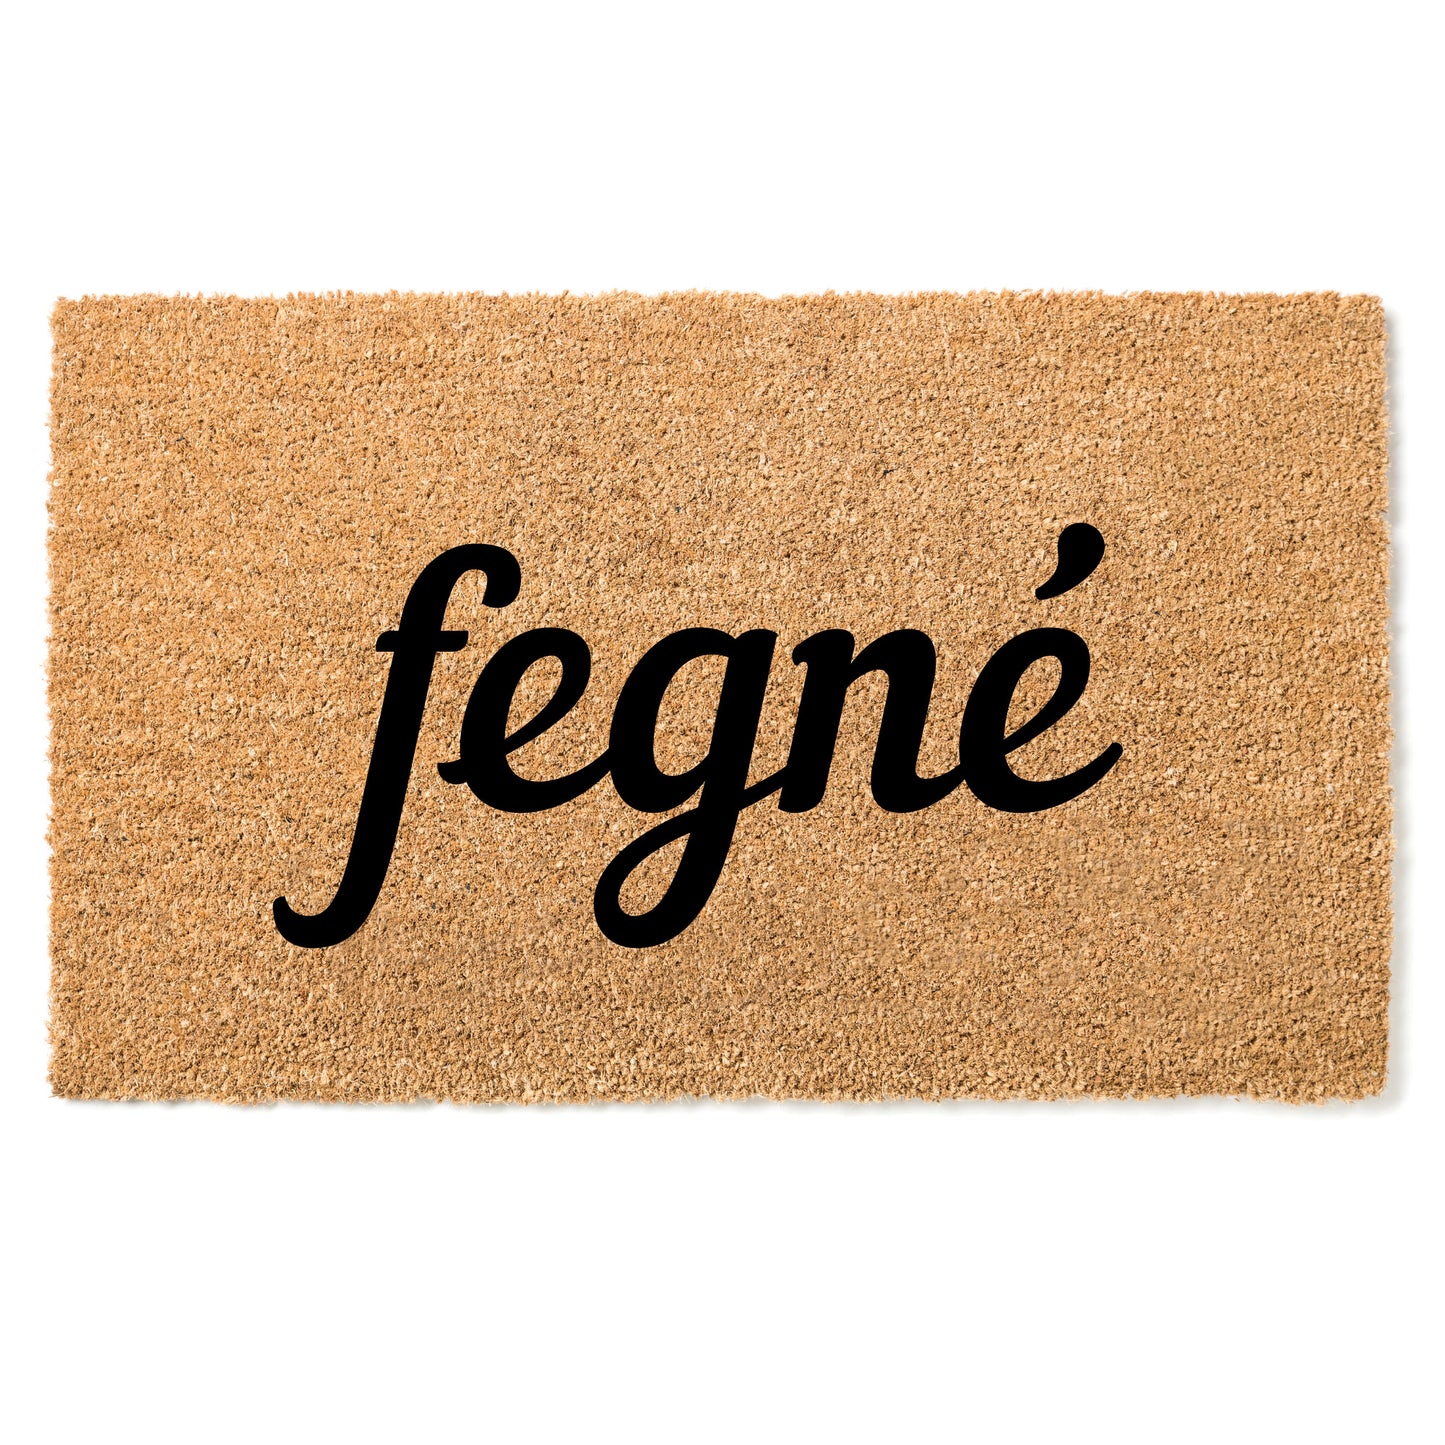 "Fegné" door mat - Greeting in Abidji